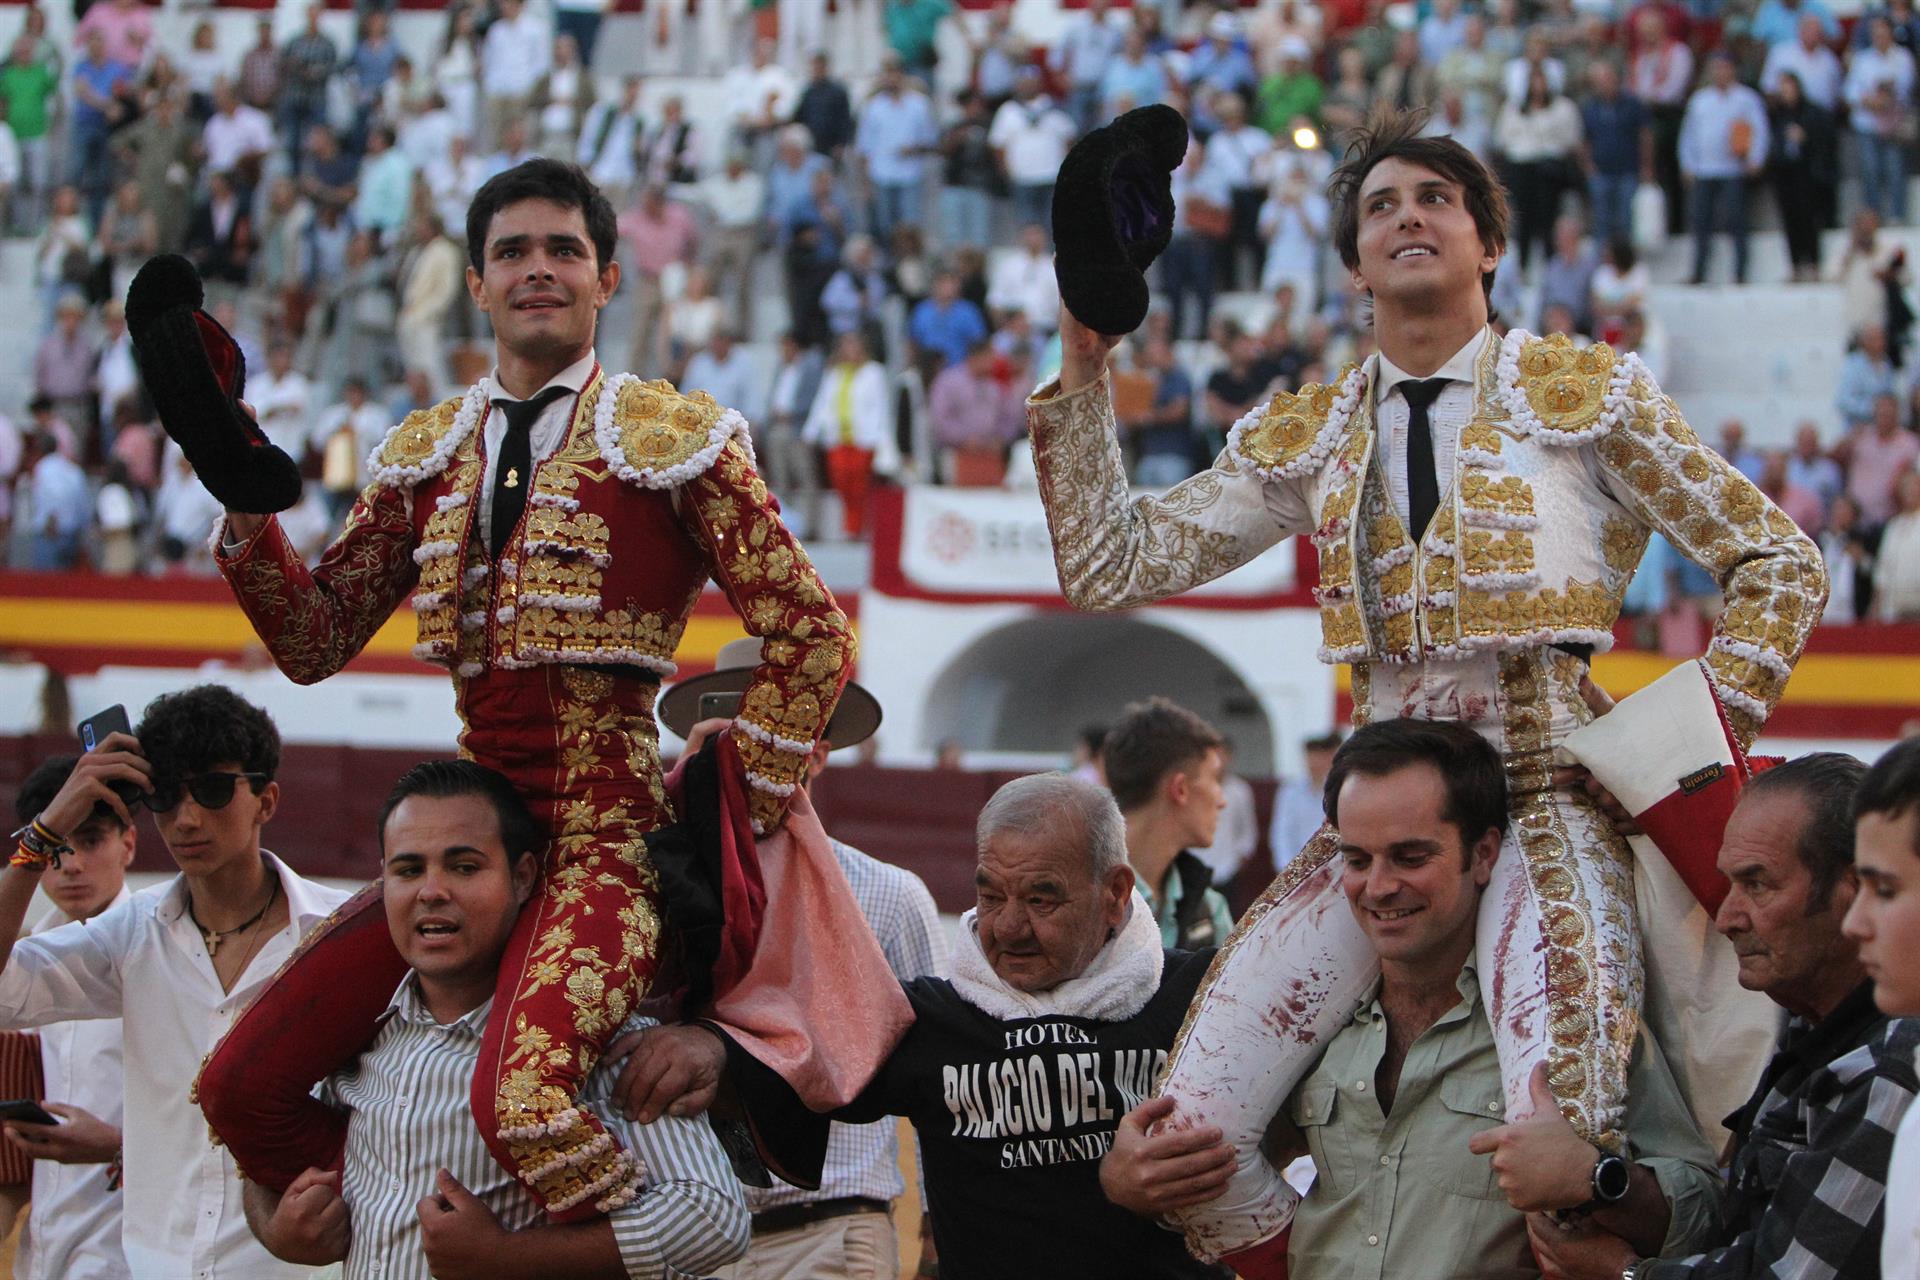 Los diestros Roca Rey (d) y Juanito (i) salen a hombros de la plaza de toros de Zafra hoy sábado tras el festejo taurino de Feria Internacional Ganadera (FIG) y Tradicional de San Miguel. EFE/ Jero Morales